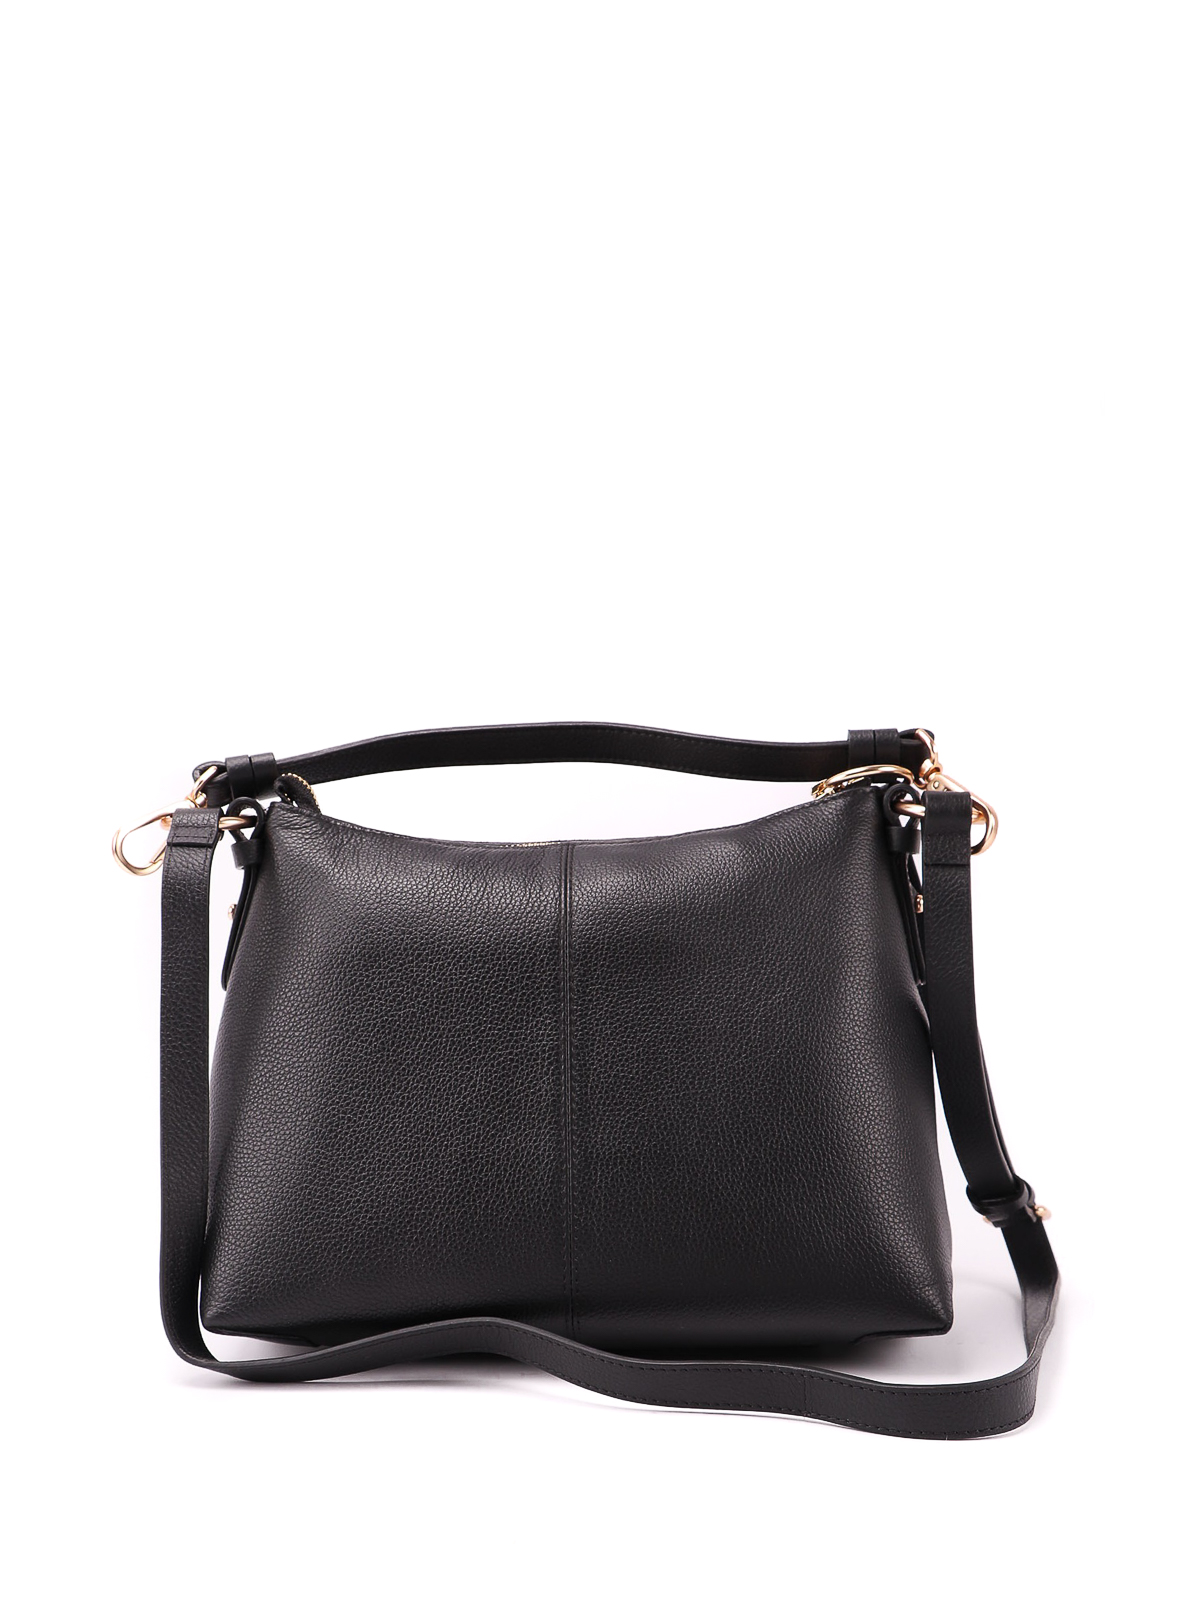 Joan Mini Hobo Bag - See By Chloe - Black - Leather